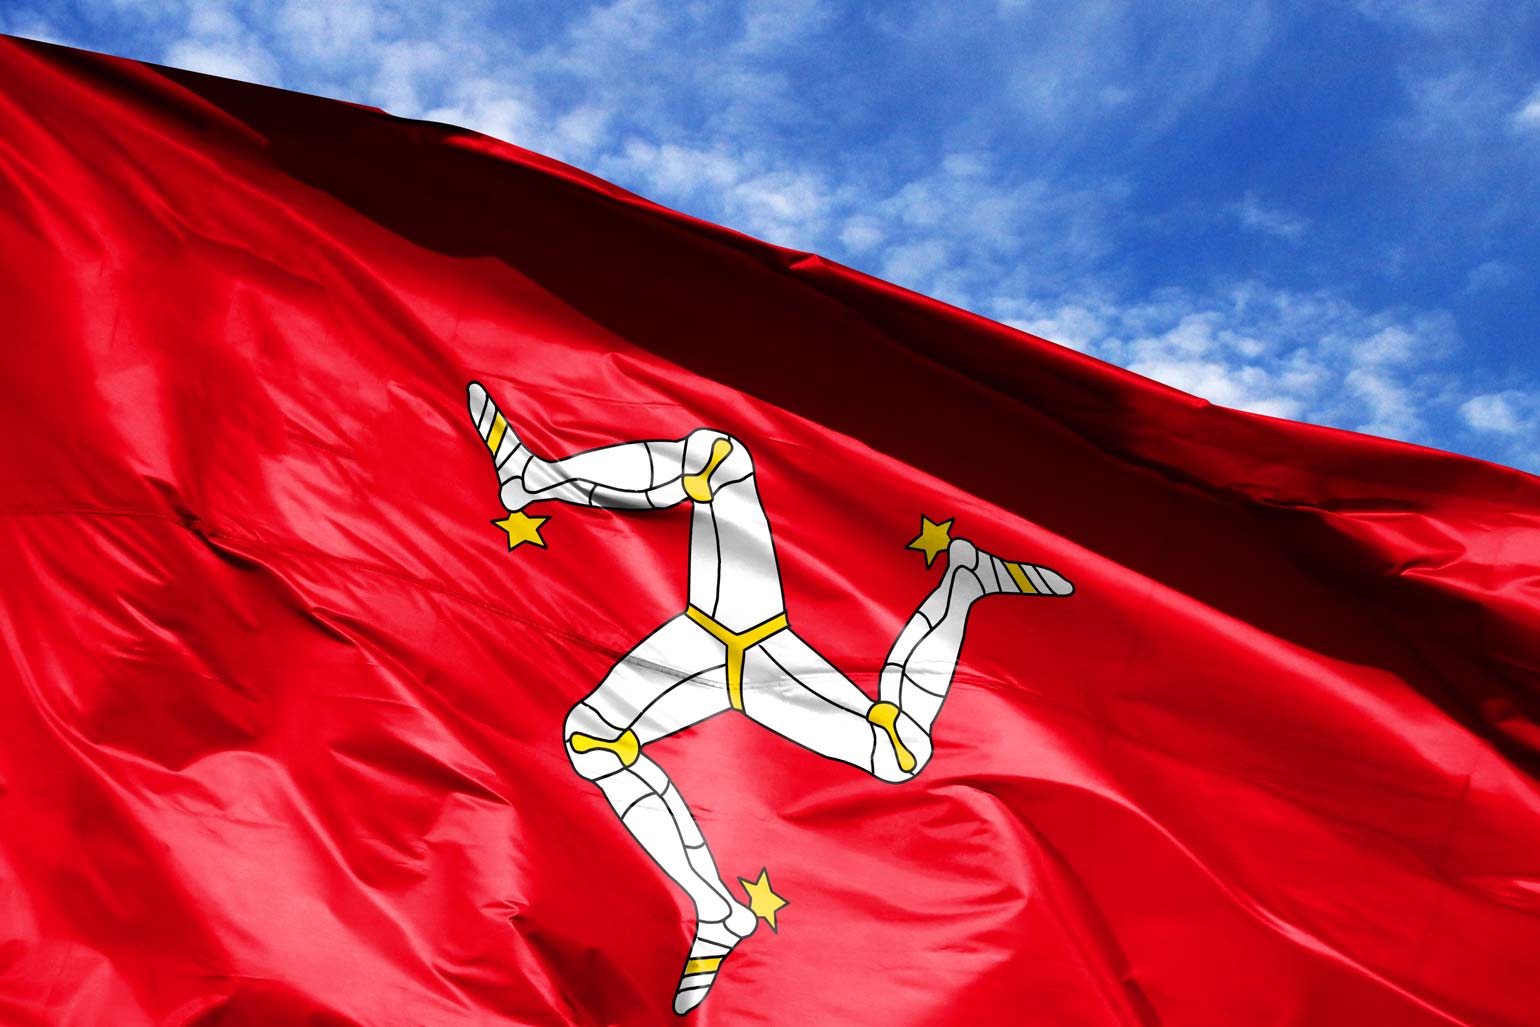 Isle of Man - Three Legs